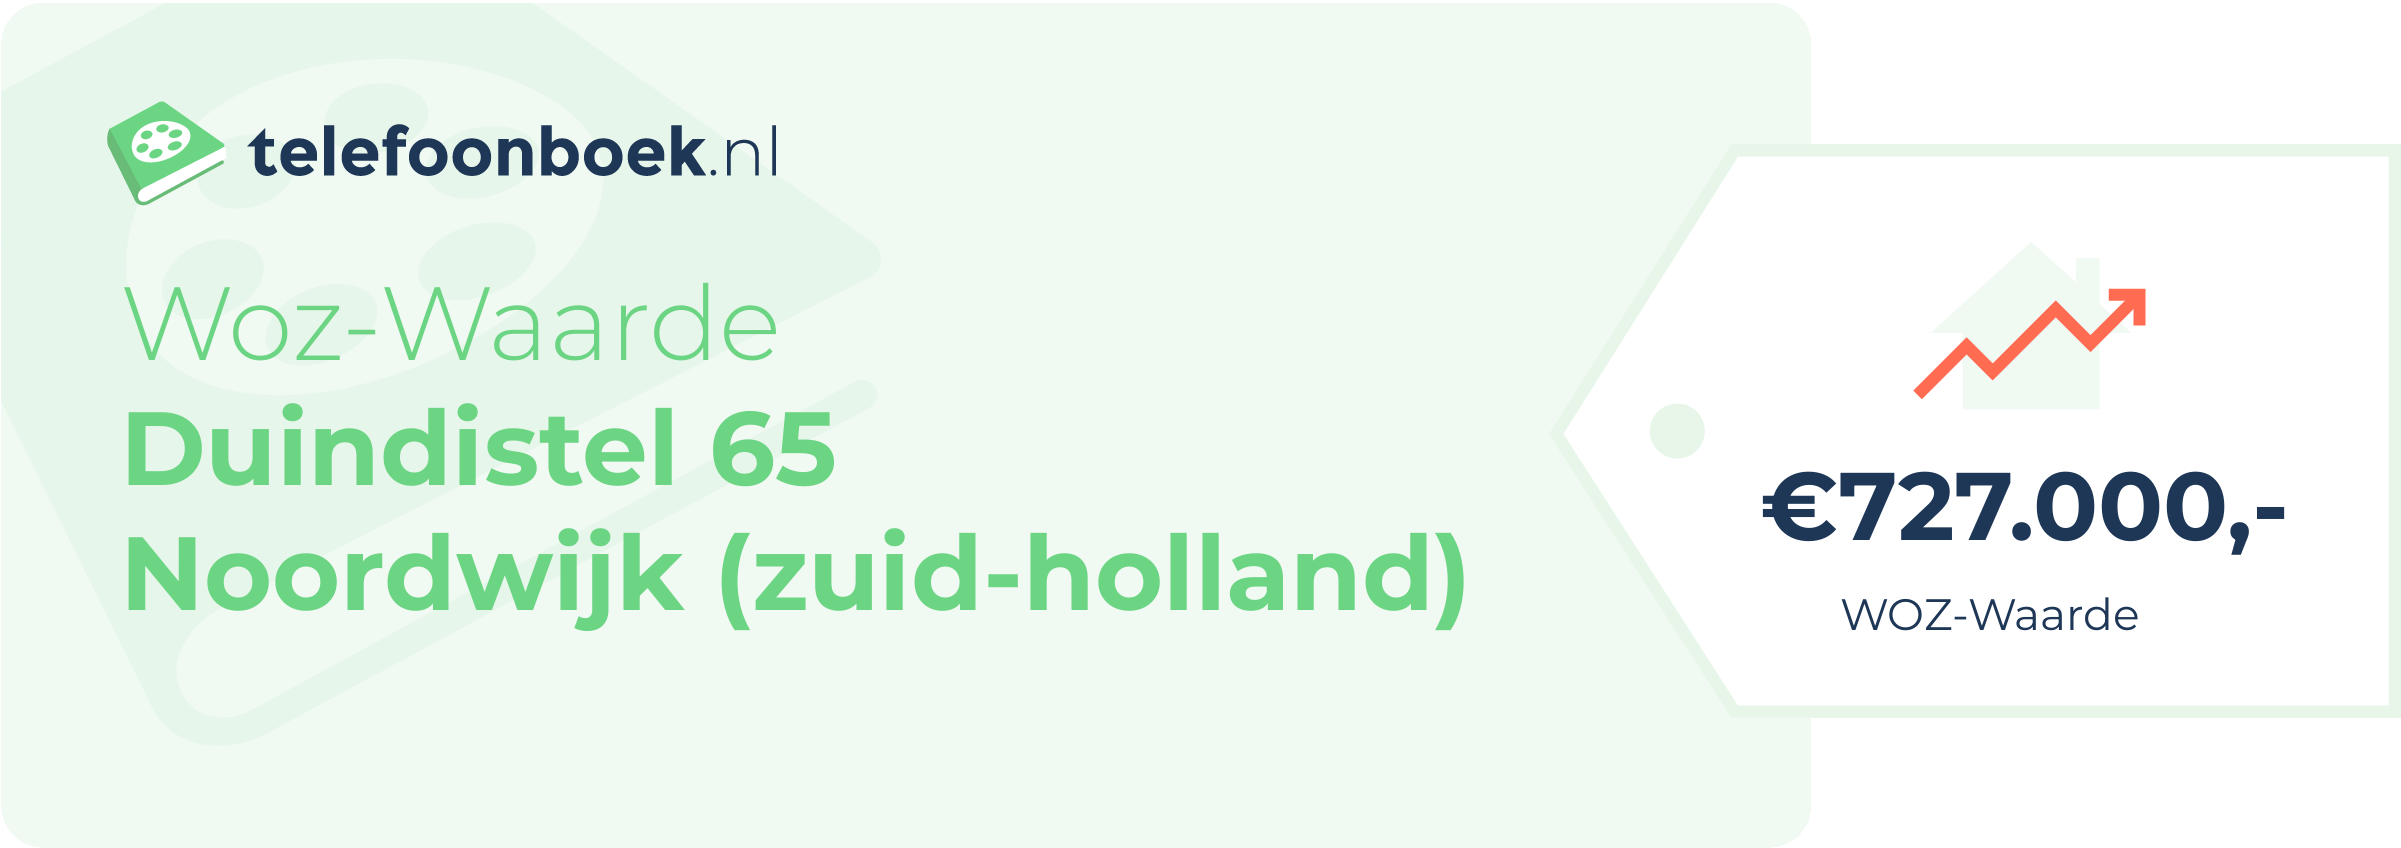 WOZ-waarde Duindistel 65 Noordwijk (Zuid-Holland)